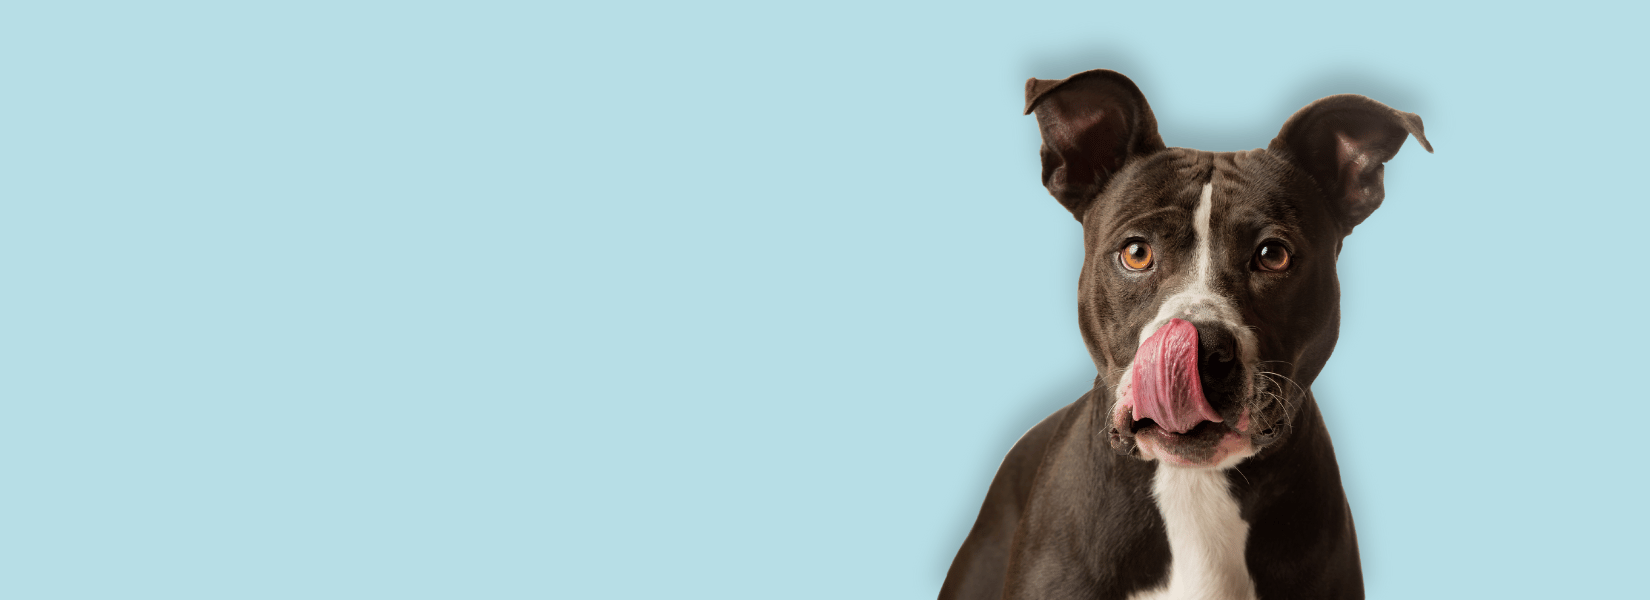 Czy pies musi ugryźć? | Akademia Barbakusa